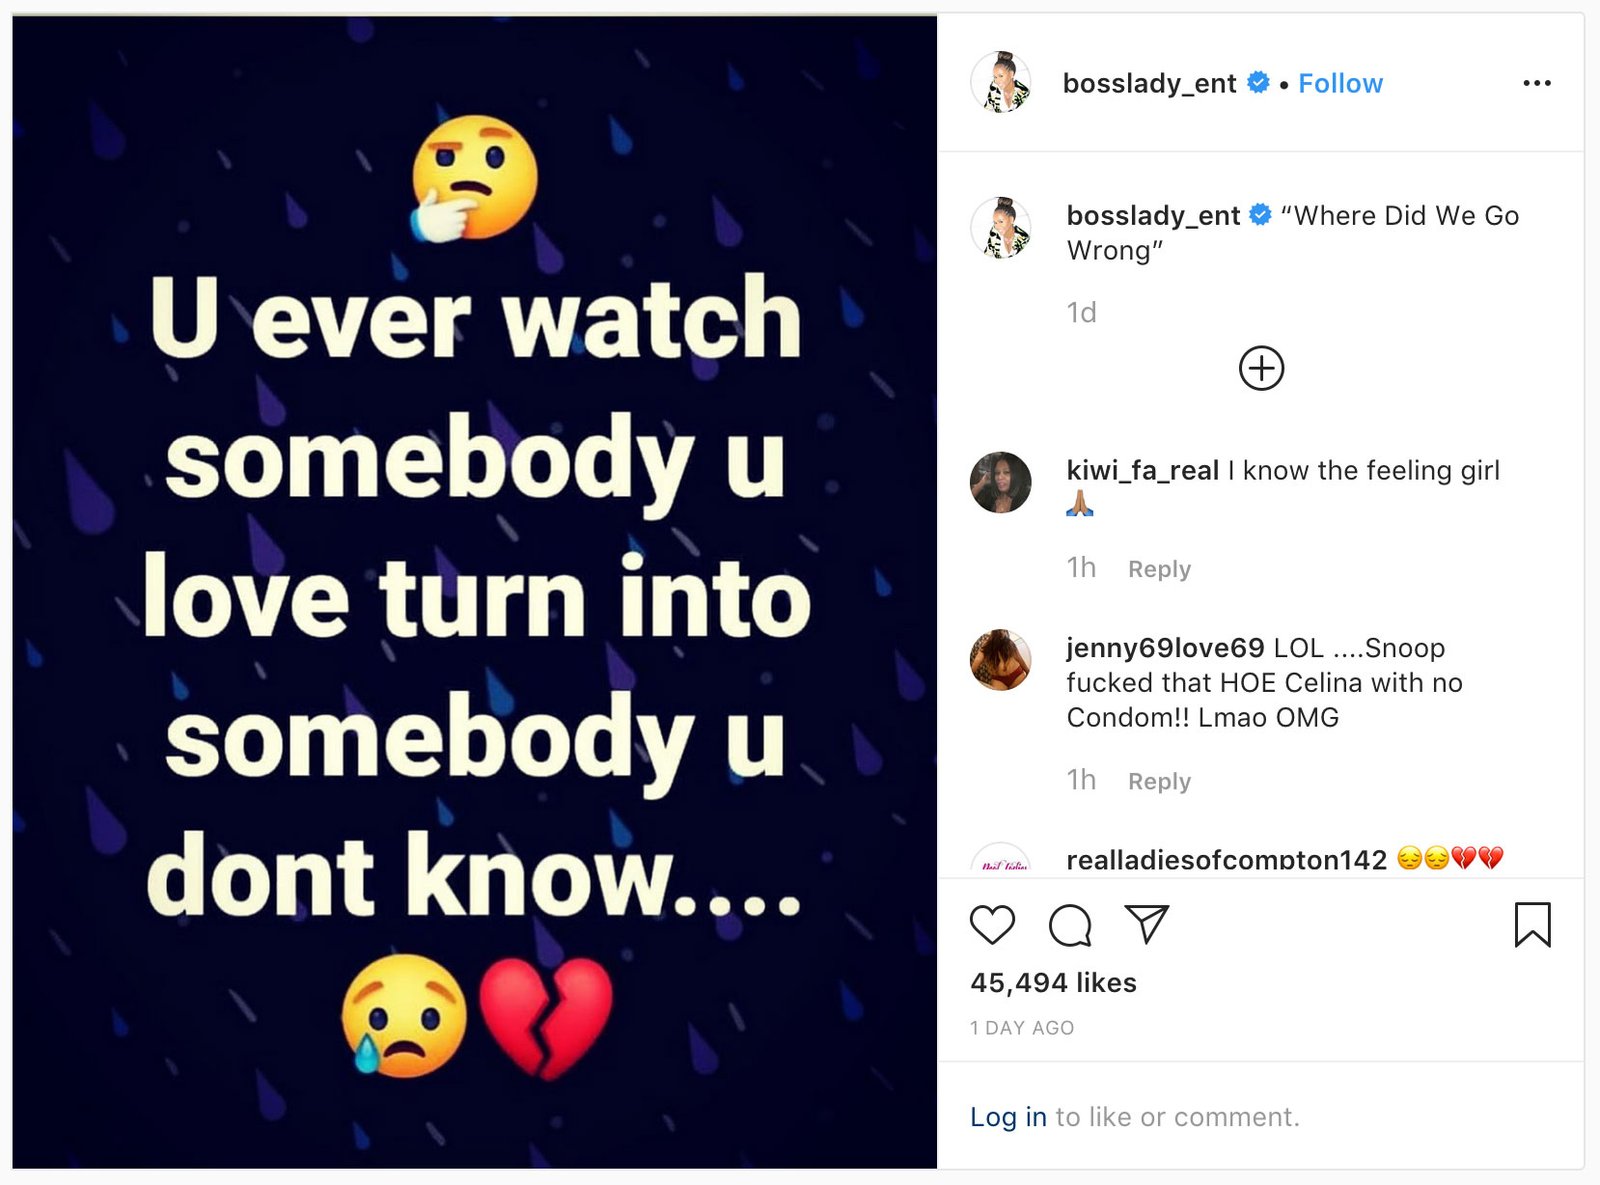 Shante Monique Broadus Instagram post, December 2019